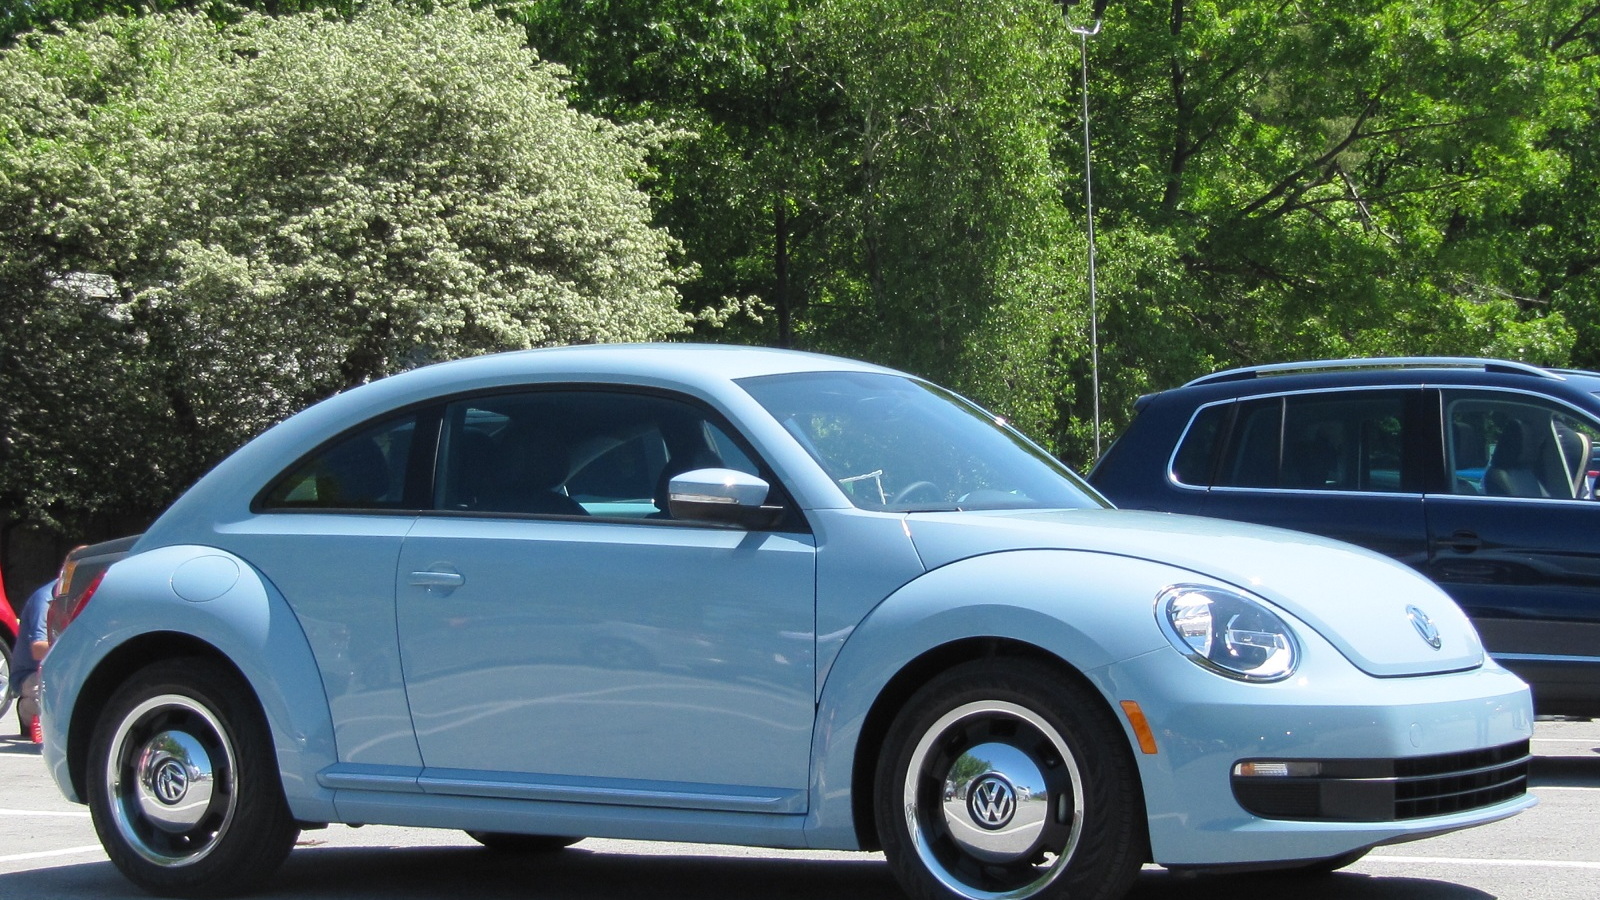 2012 Volkswagen Beetle, Bear Mountain, NY, May 2012